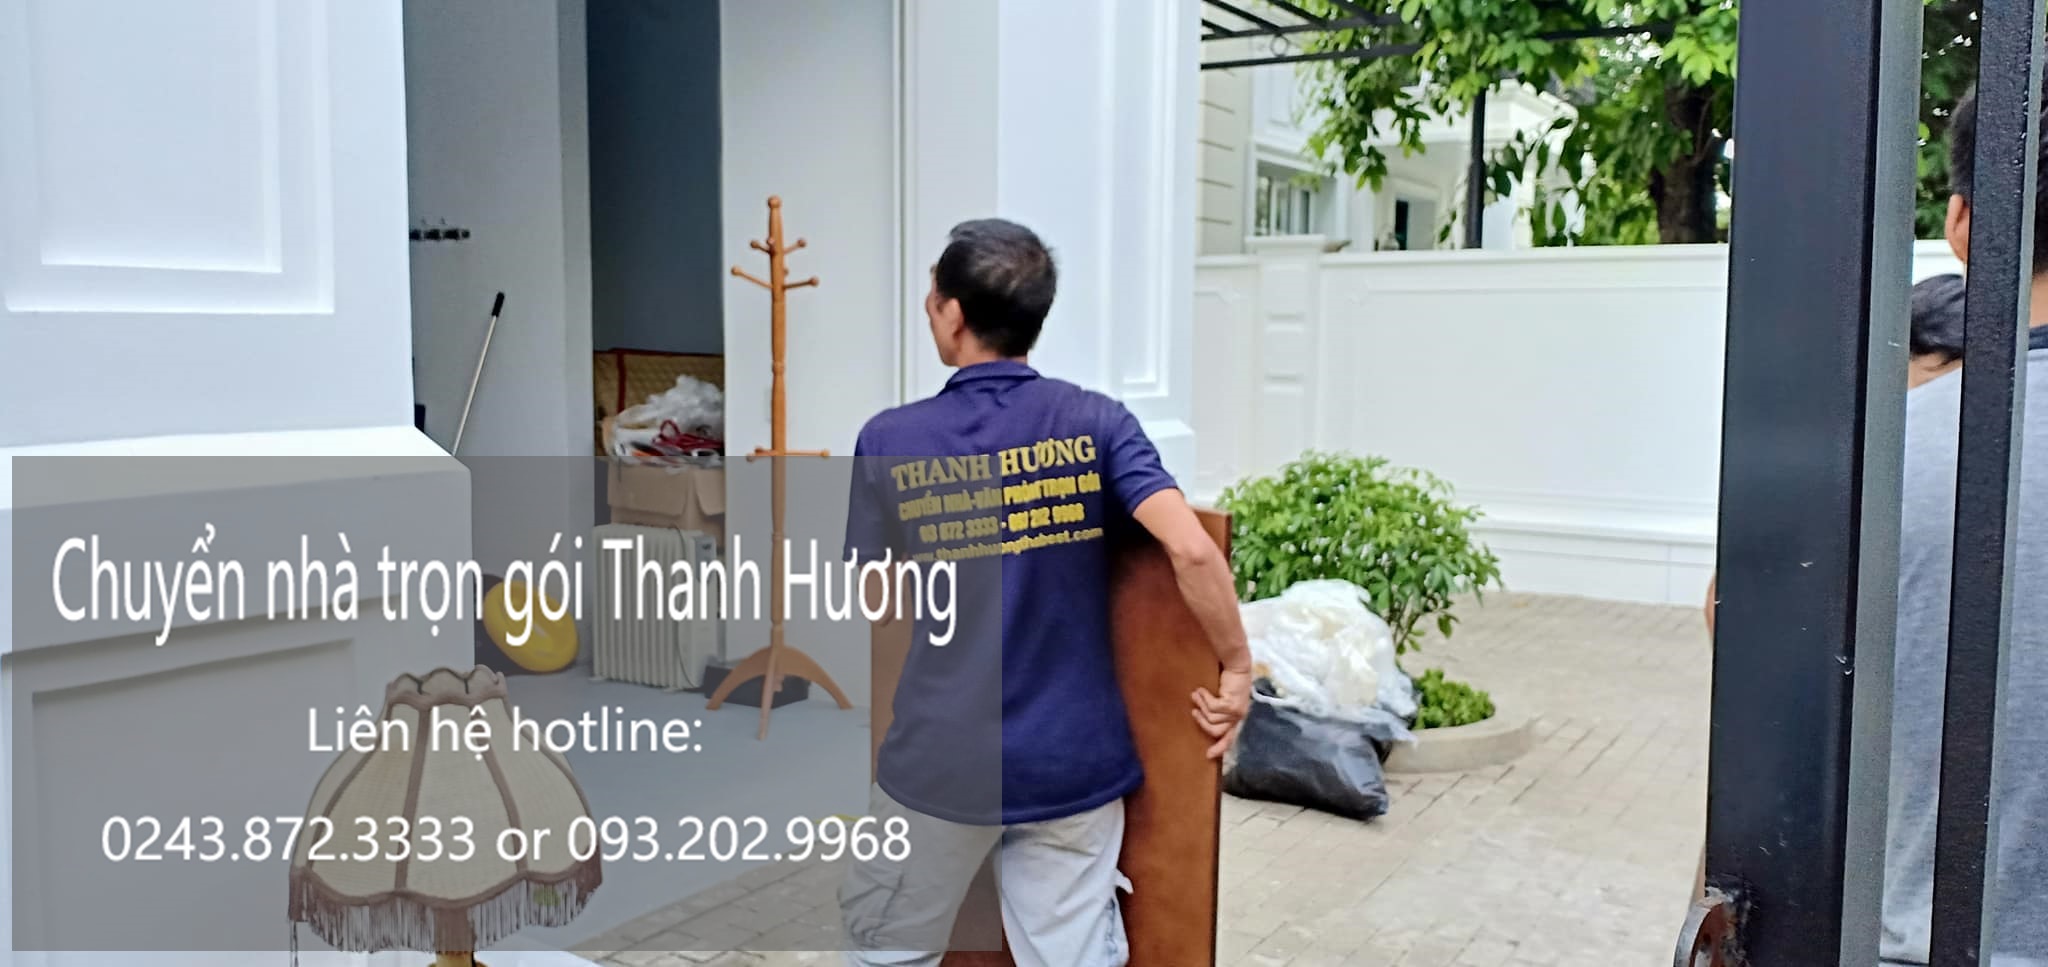 Dịch vụ chuyển văn phòng giá rẻ tại phố Dương Khê